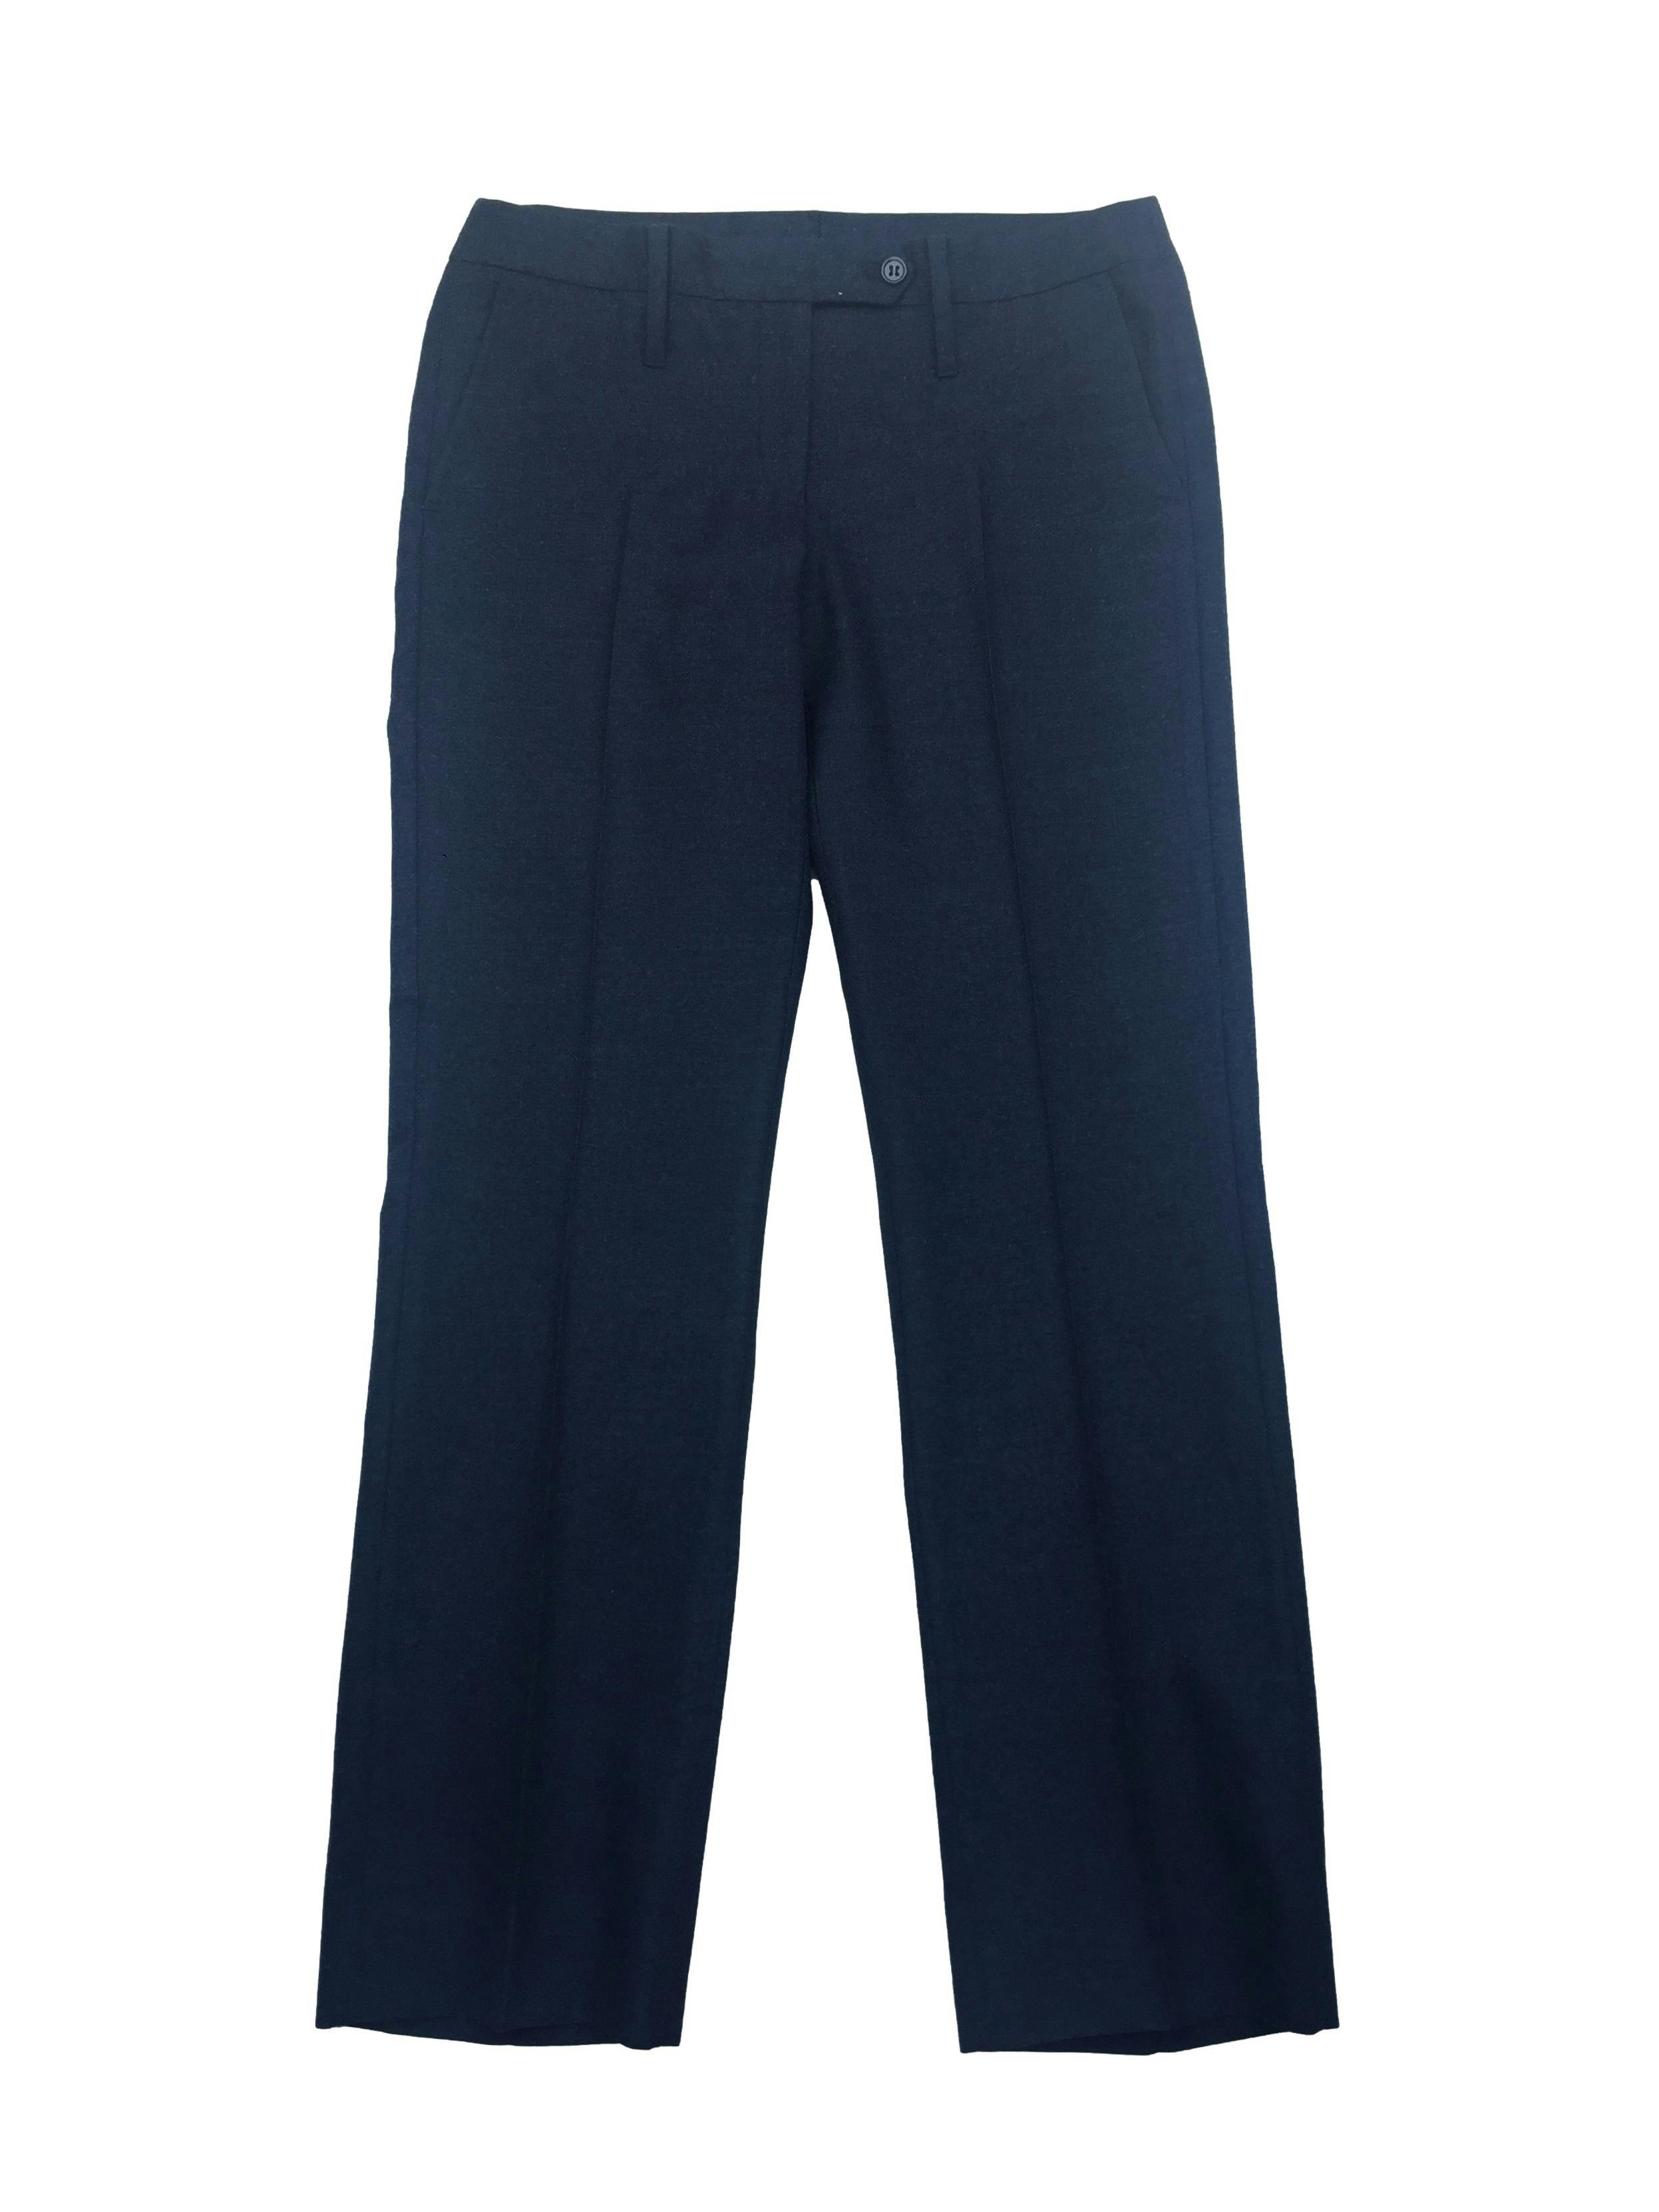 Pantalón sastre de lanilla azul marino, corte recto con tres bolsillos. Cintura 80cm, Tiro 22cm, Largo 95cm.